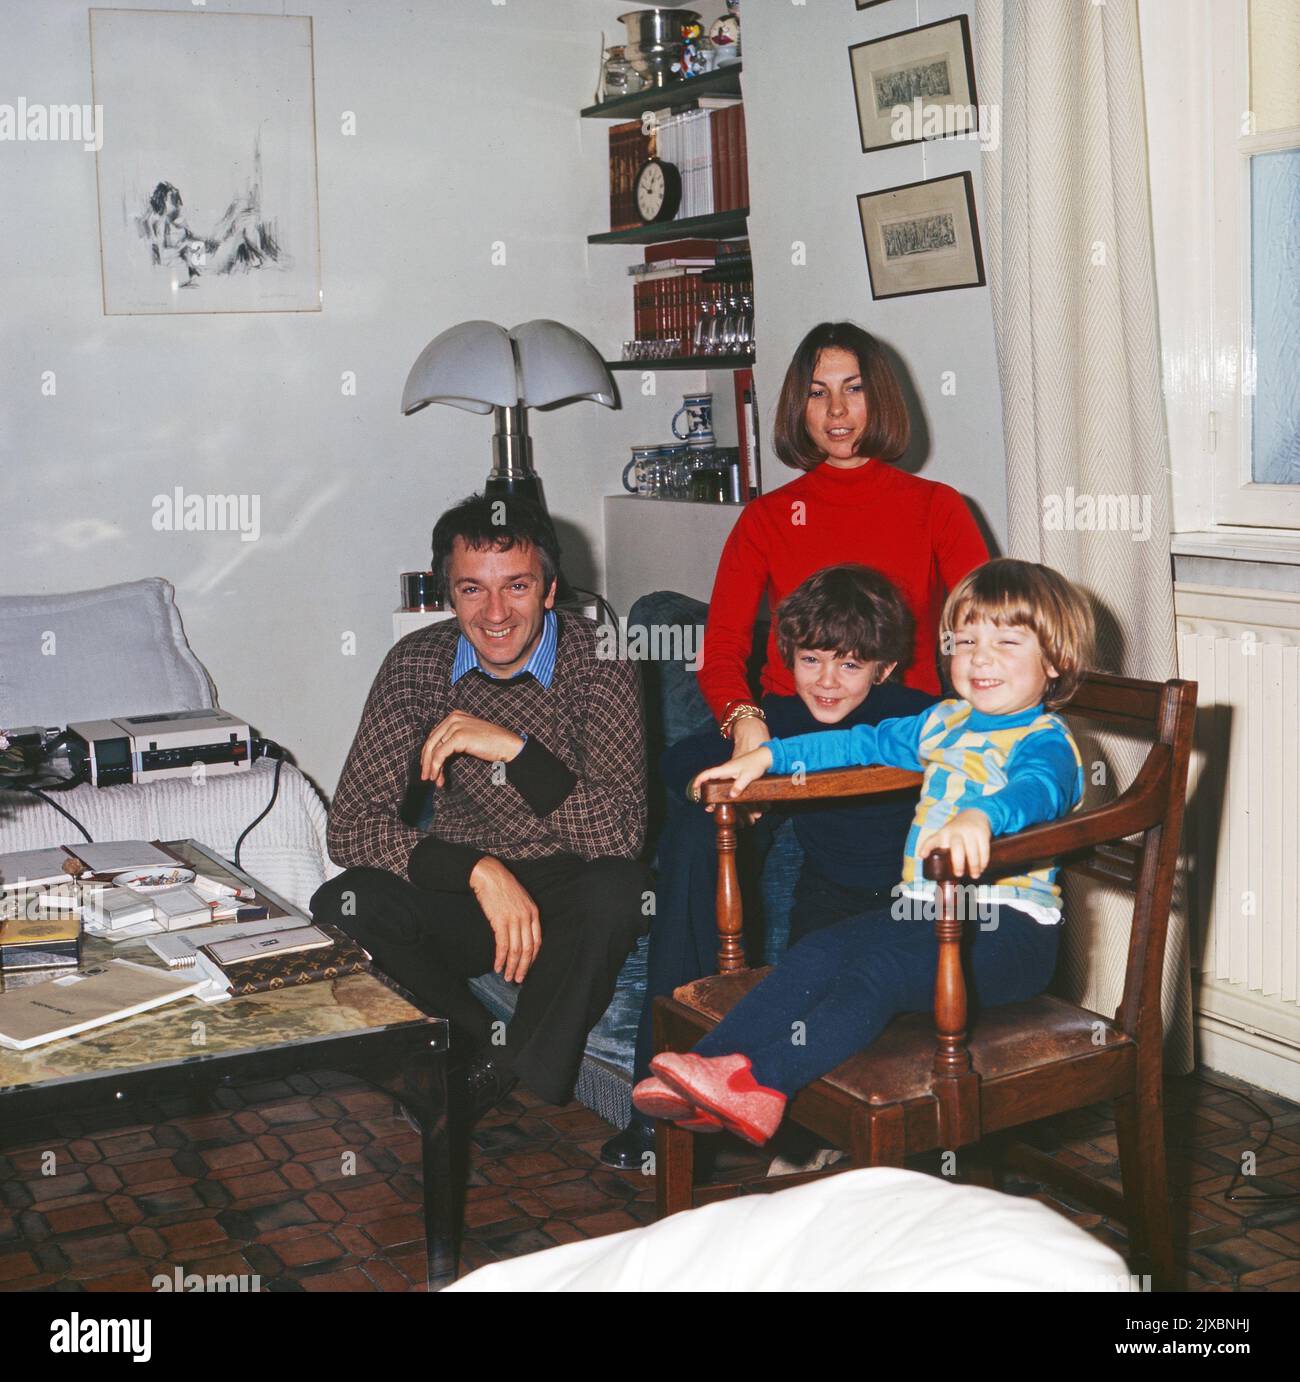 Jean Pierre Cassel, französischer Sauspieler, mit Ehefrau Sabine Lanfranchi und den Söhnen Vincent und Mathias, Frankreich 1975. Banque D'Images